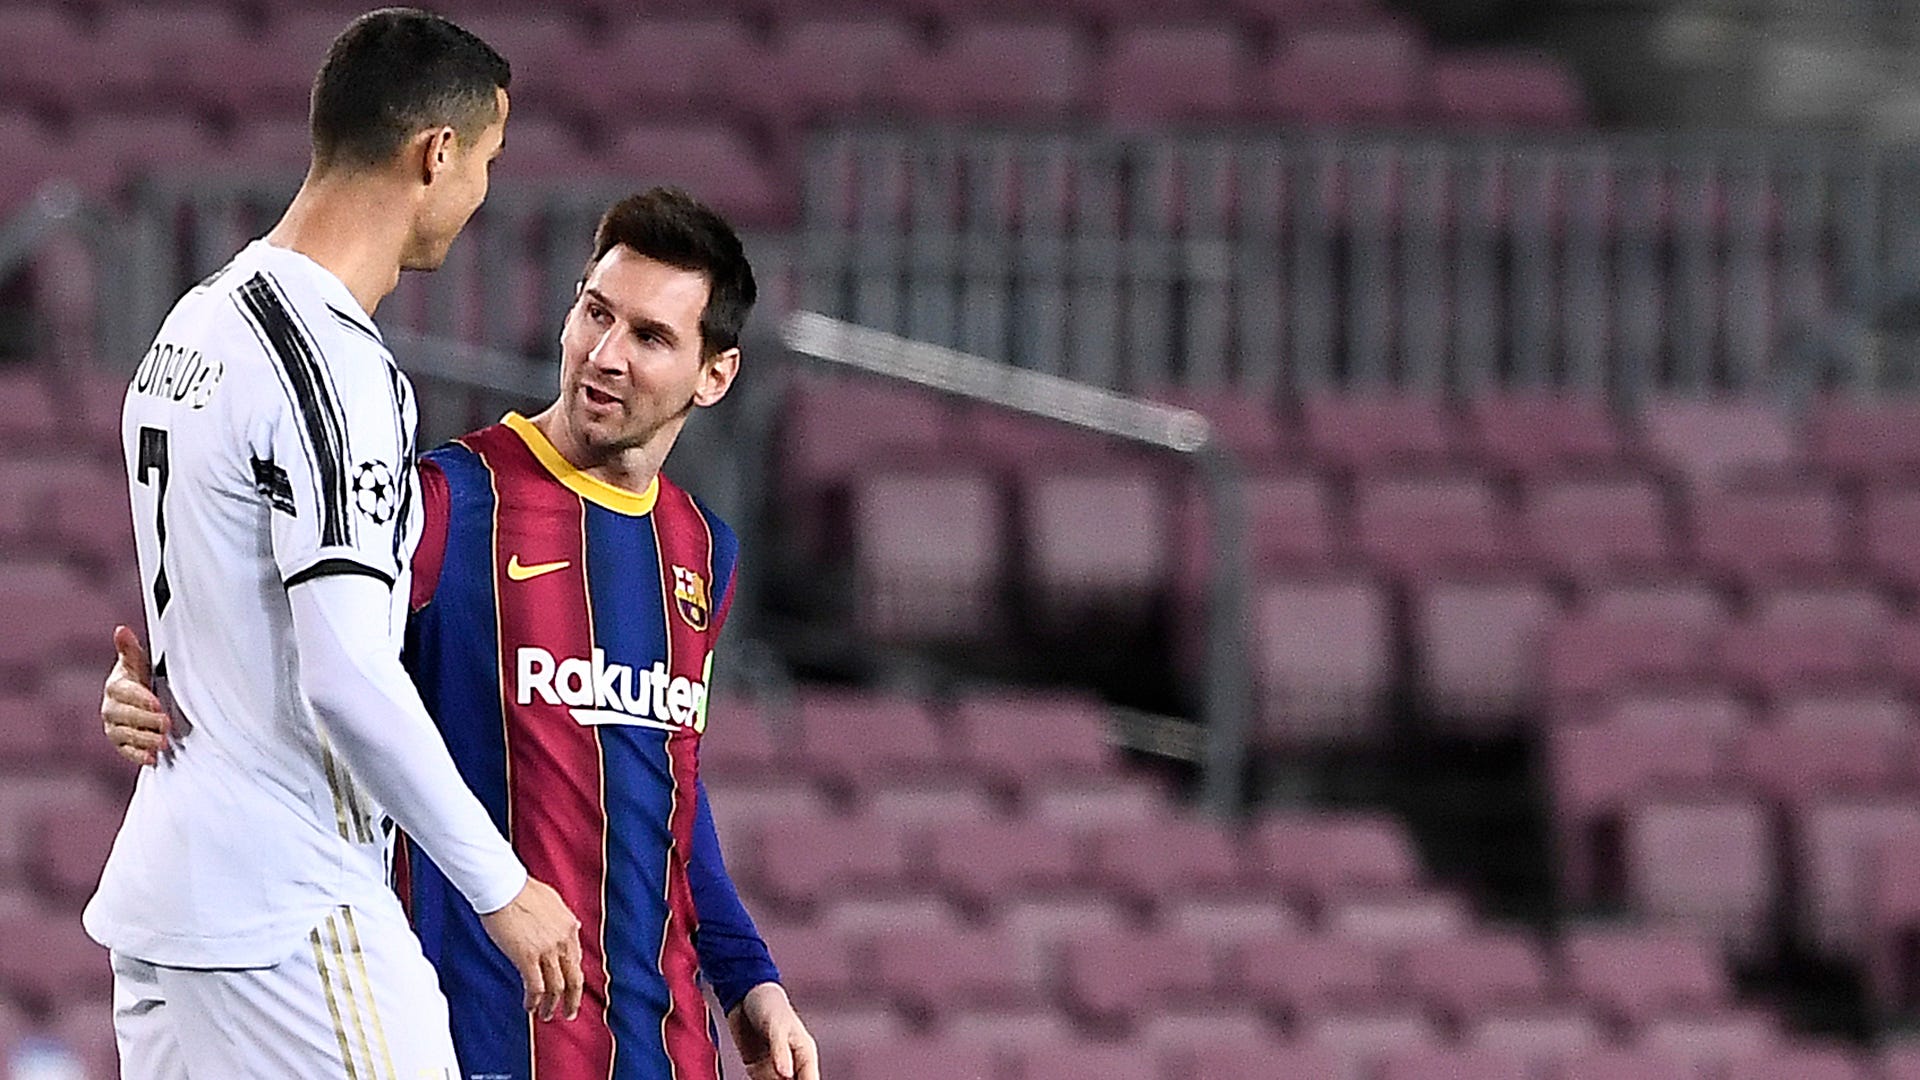 Có lẽ không có thảo luận nào gay cấn hơn về Messi vs Ronaldo. Hãy xem ảnh liên quan để tìm hiểu thêm về sự đối đầu này giữa hai siêu sao bóng đá.